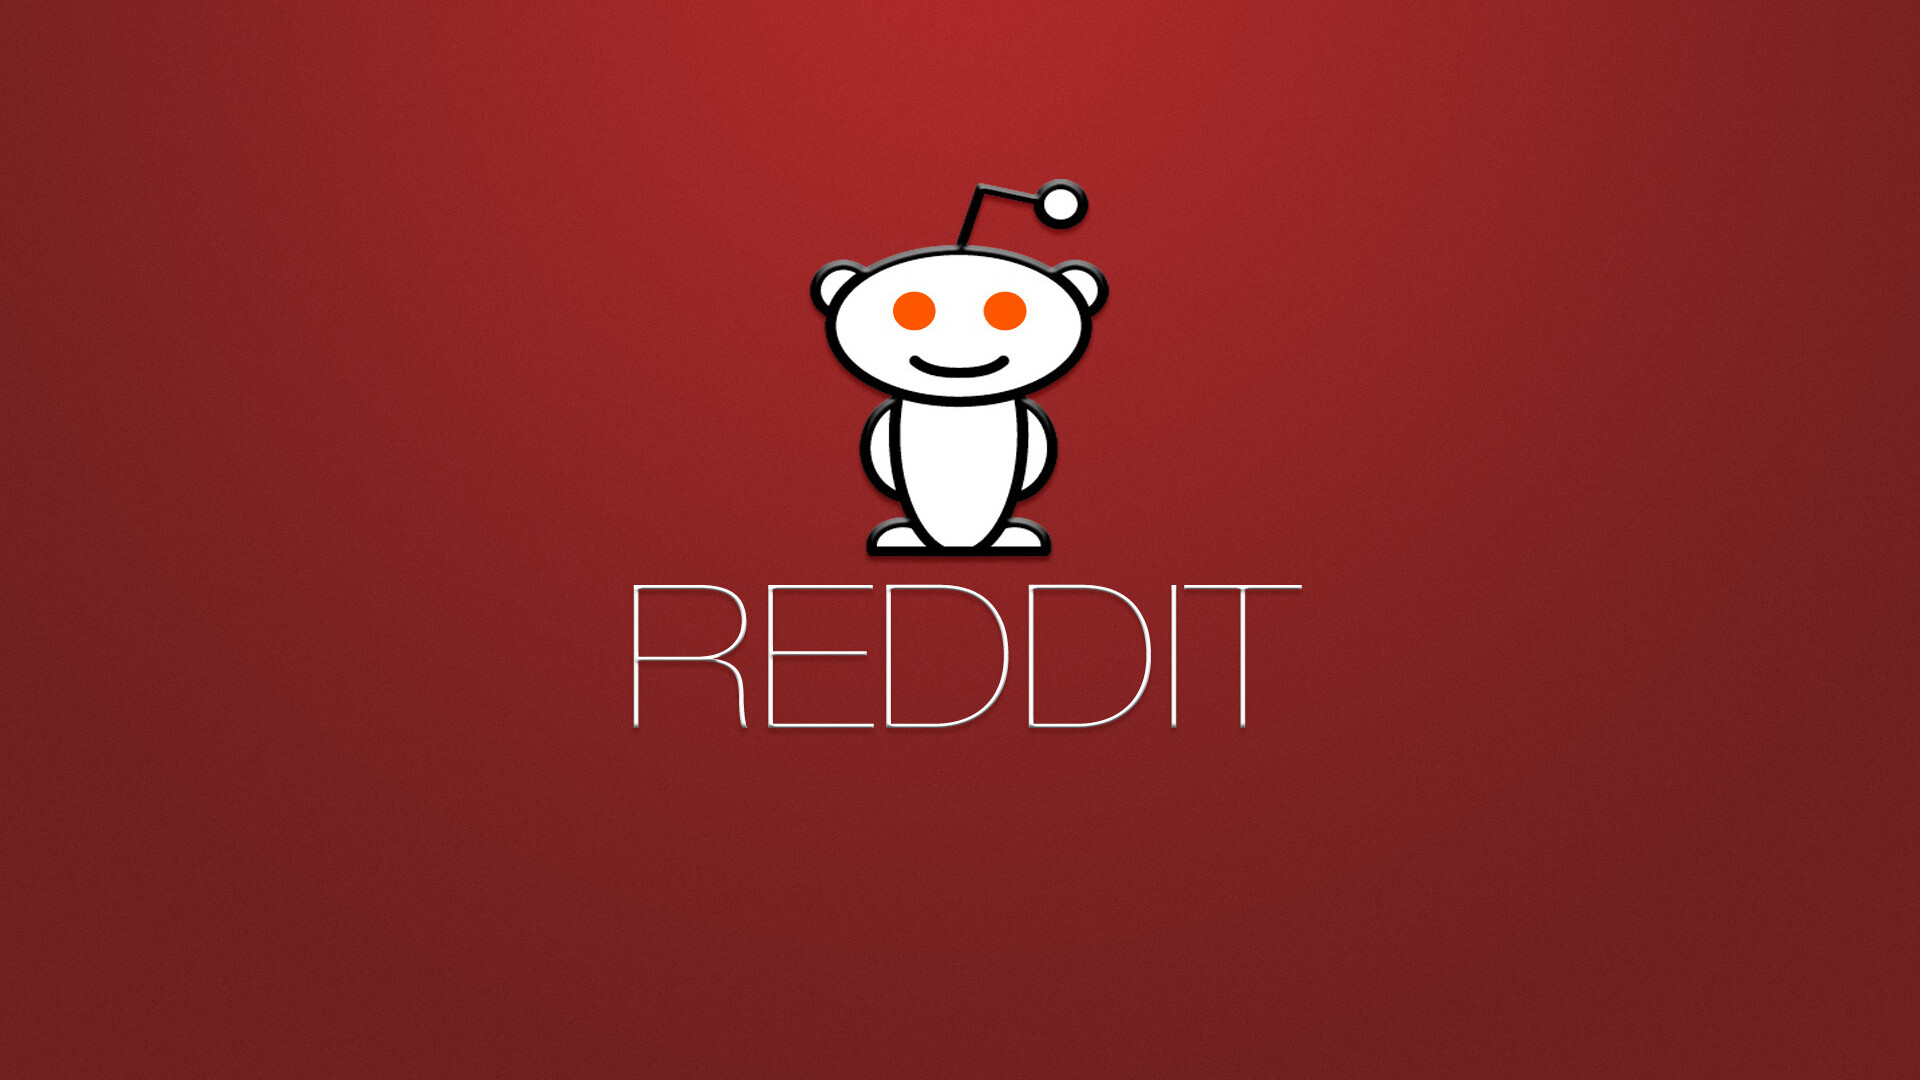 Reddit Logo Wallpaper In 1920x1080 Resolution